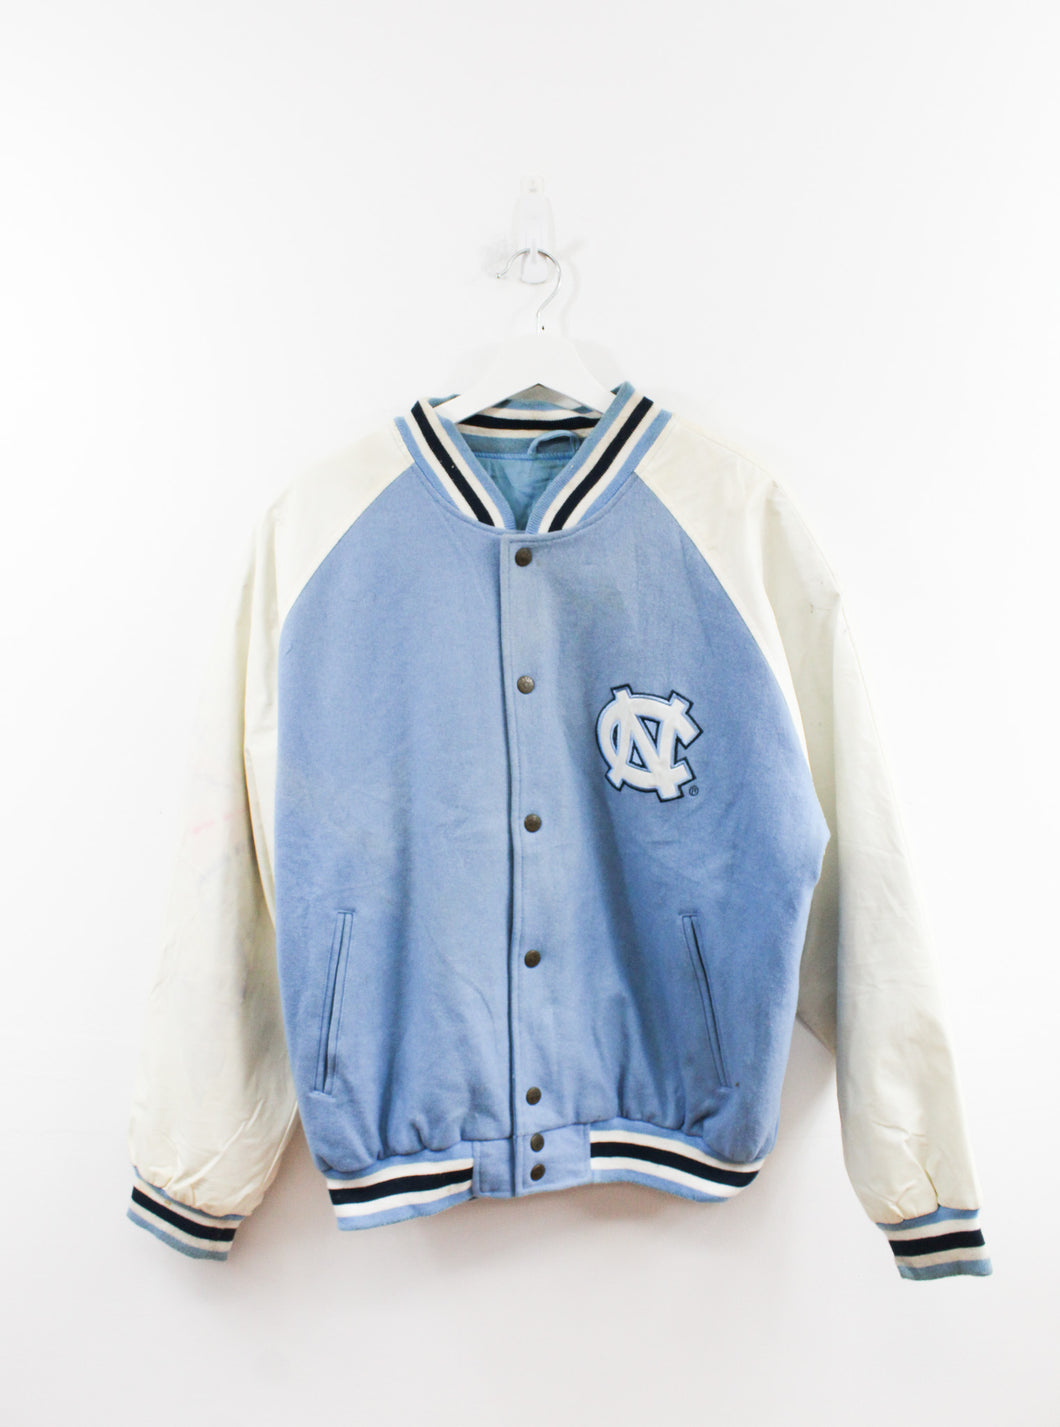 Vintage North Carolina Tarheels Letterman Jacket